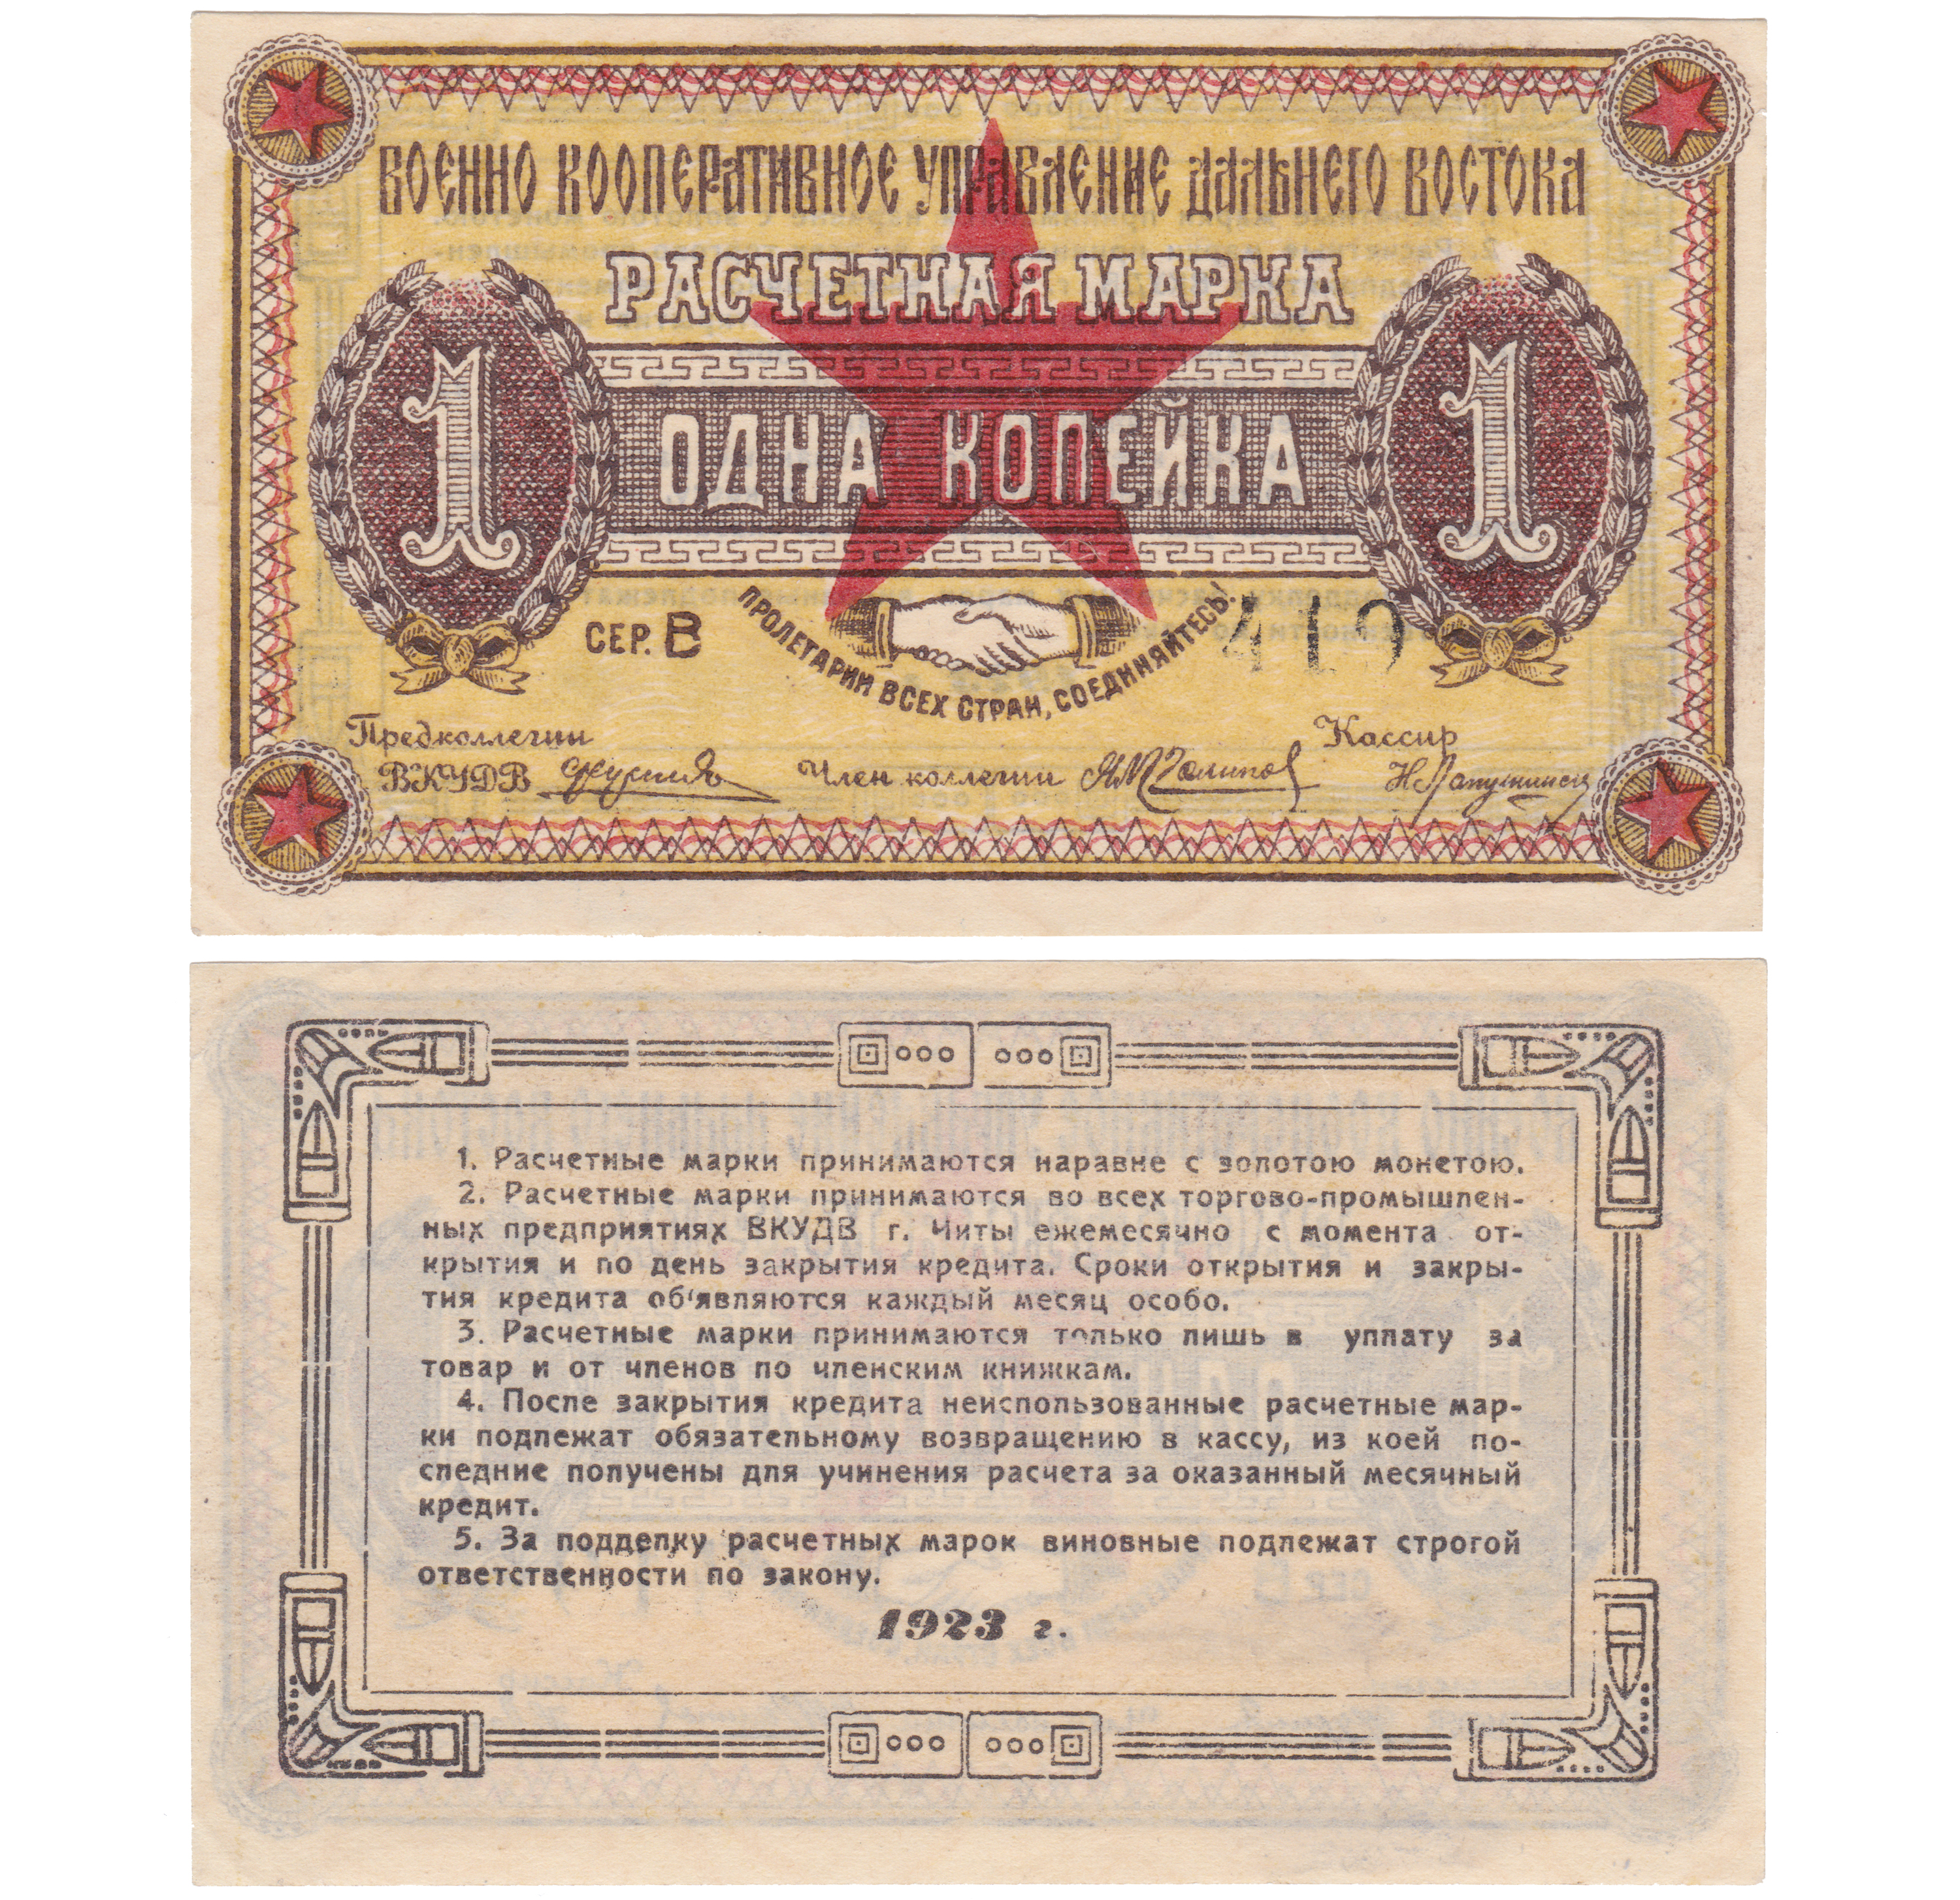 Расчетная марка 1 Копейка золотом 1923 год. Военно Кооперативное Управление Дальнего Востока, г. Чита, Забайкальская область